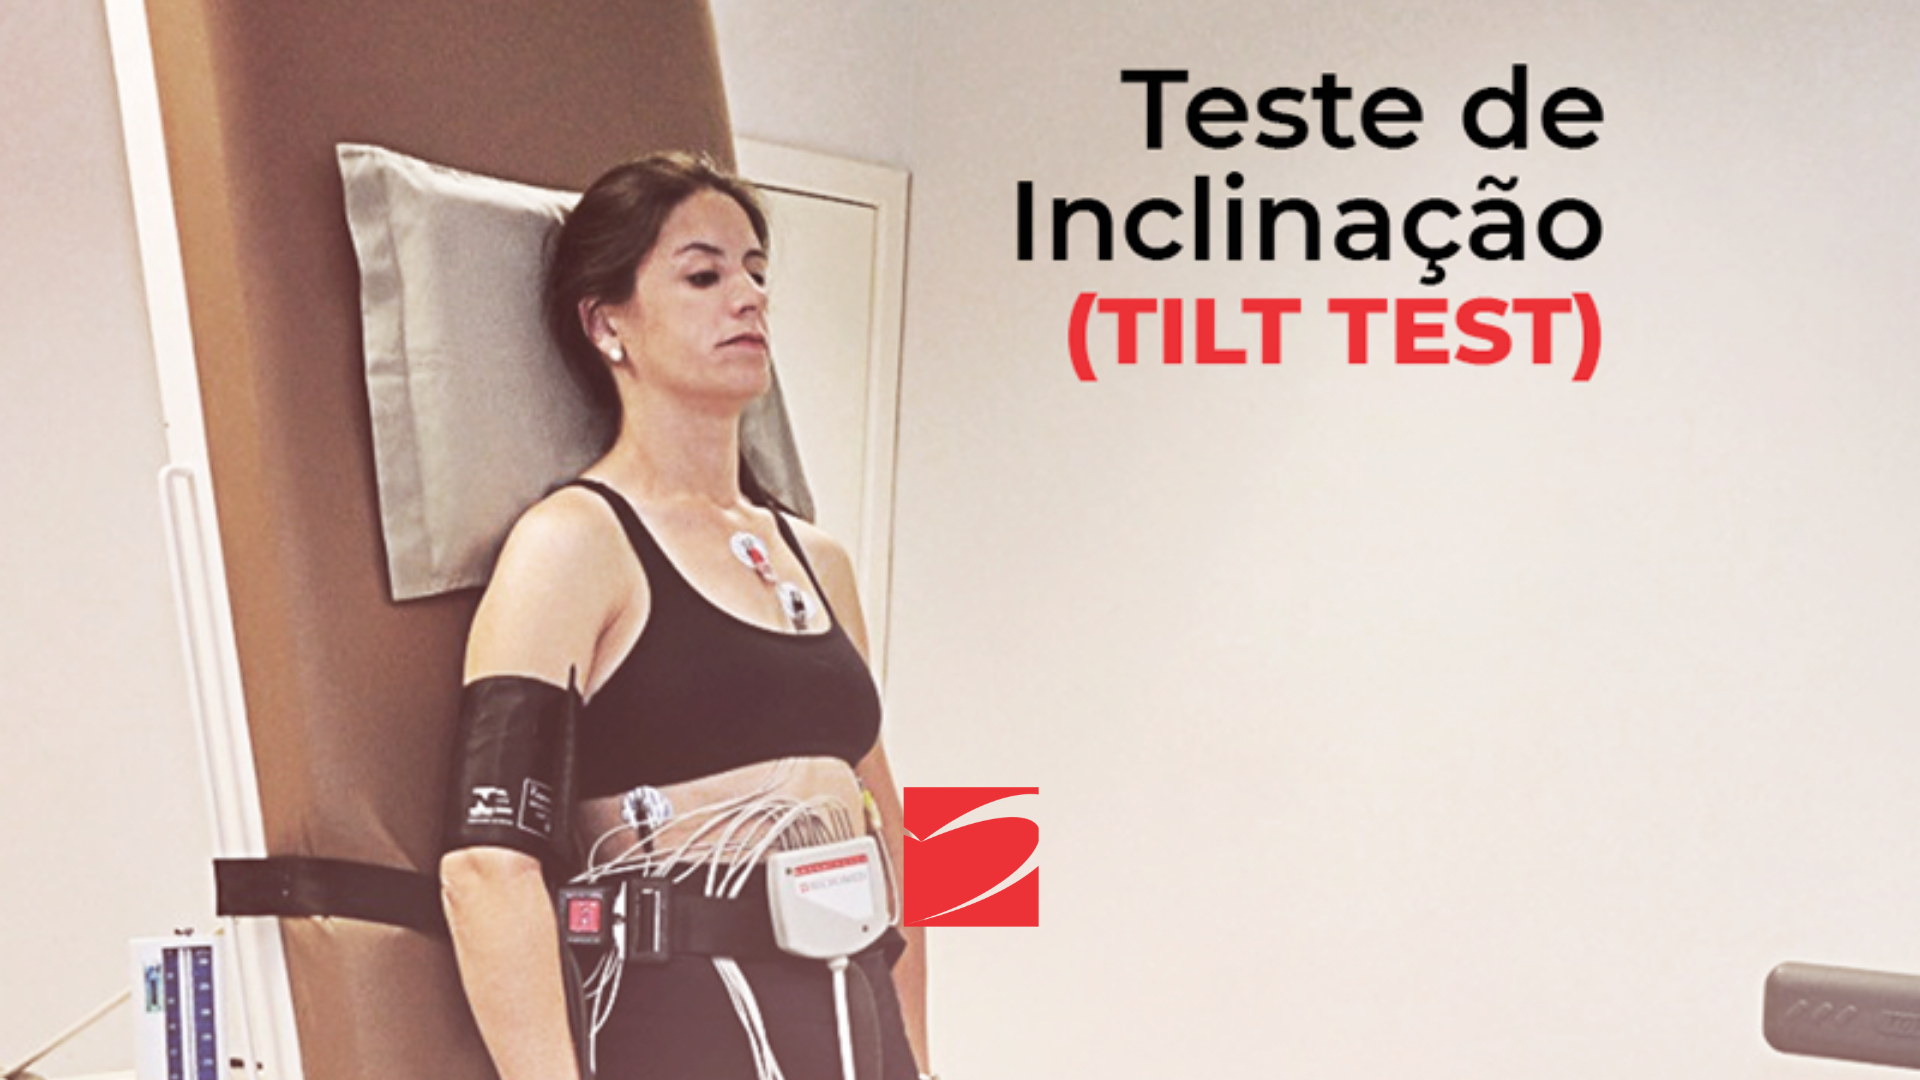 TILT TEST (TESTE DE INCLINAÇÃO) - ICOR - Instituto do Coração de Santa Maria